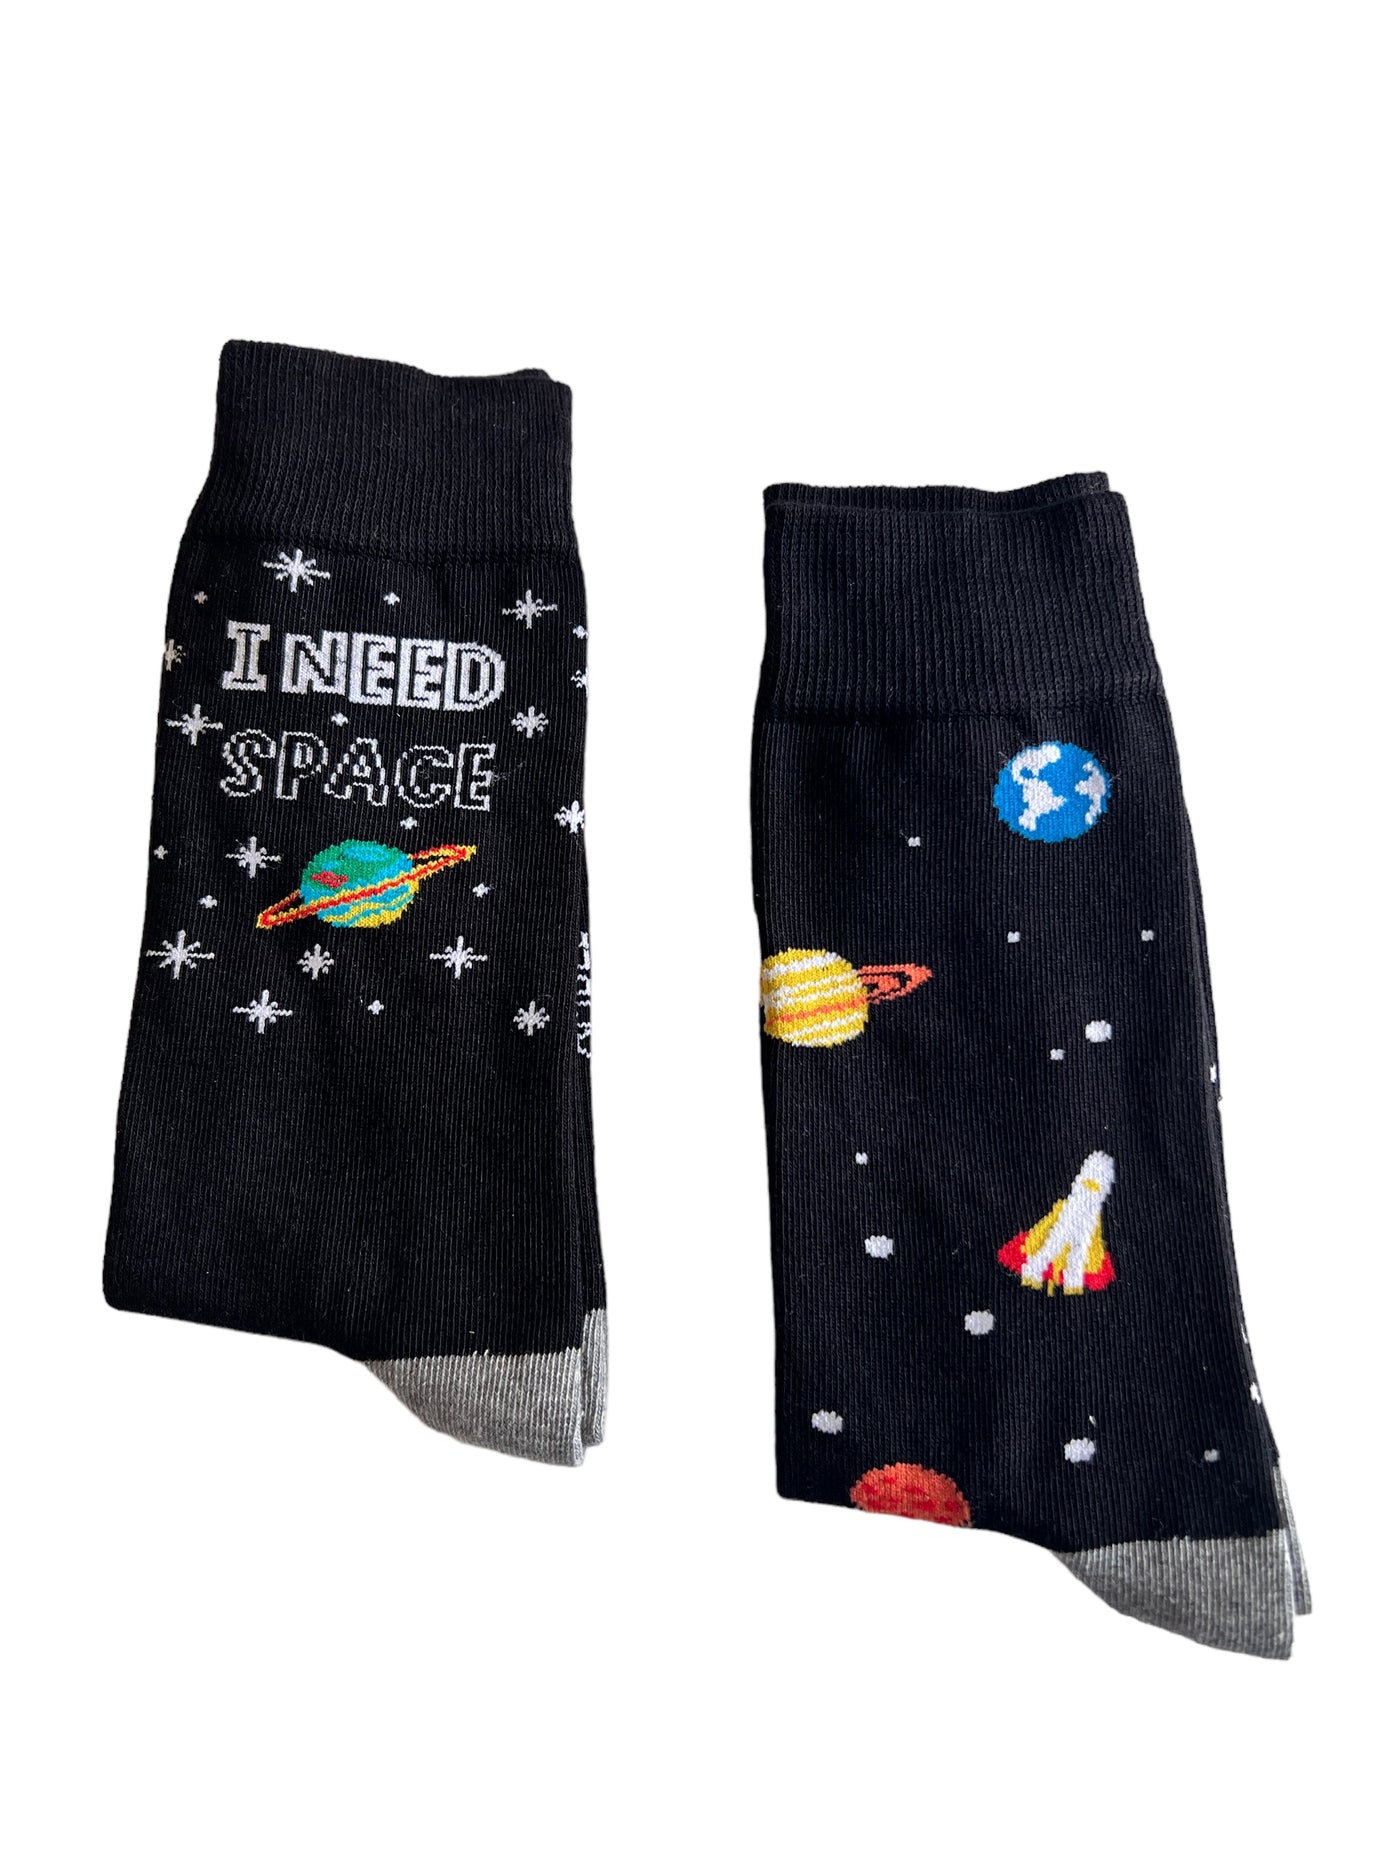 Space socks